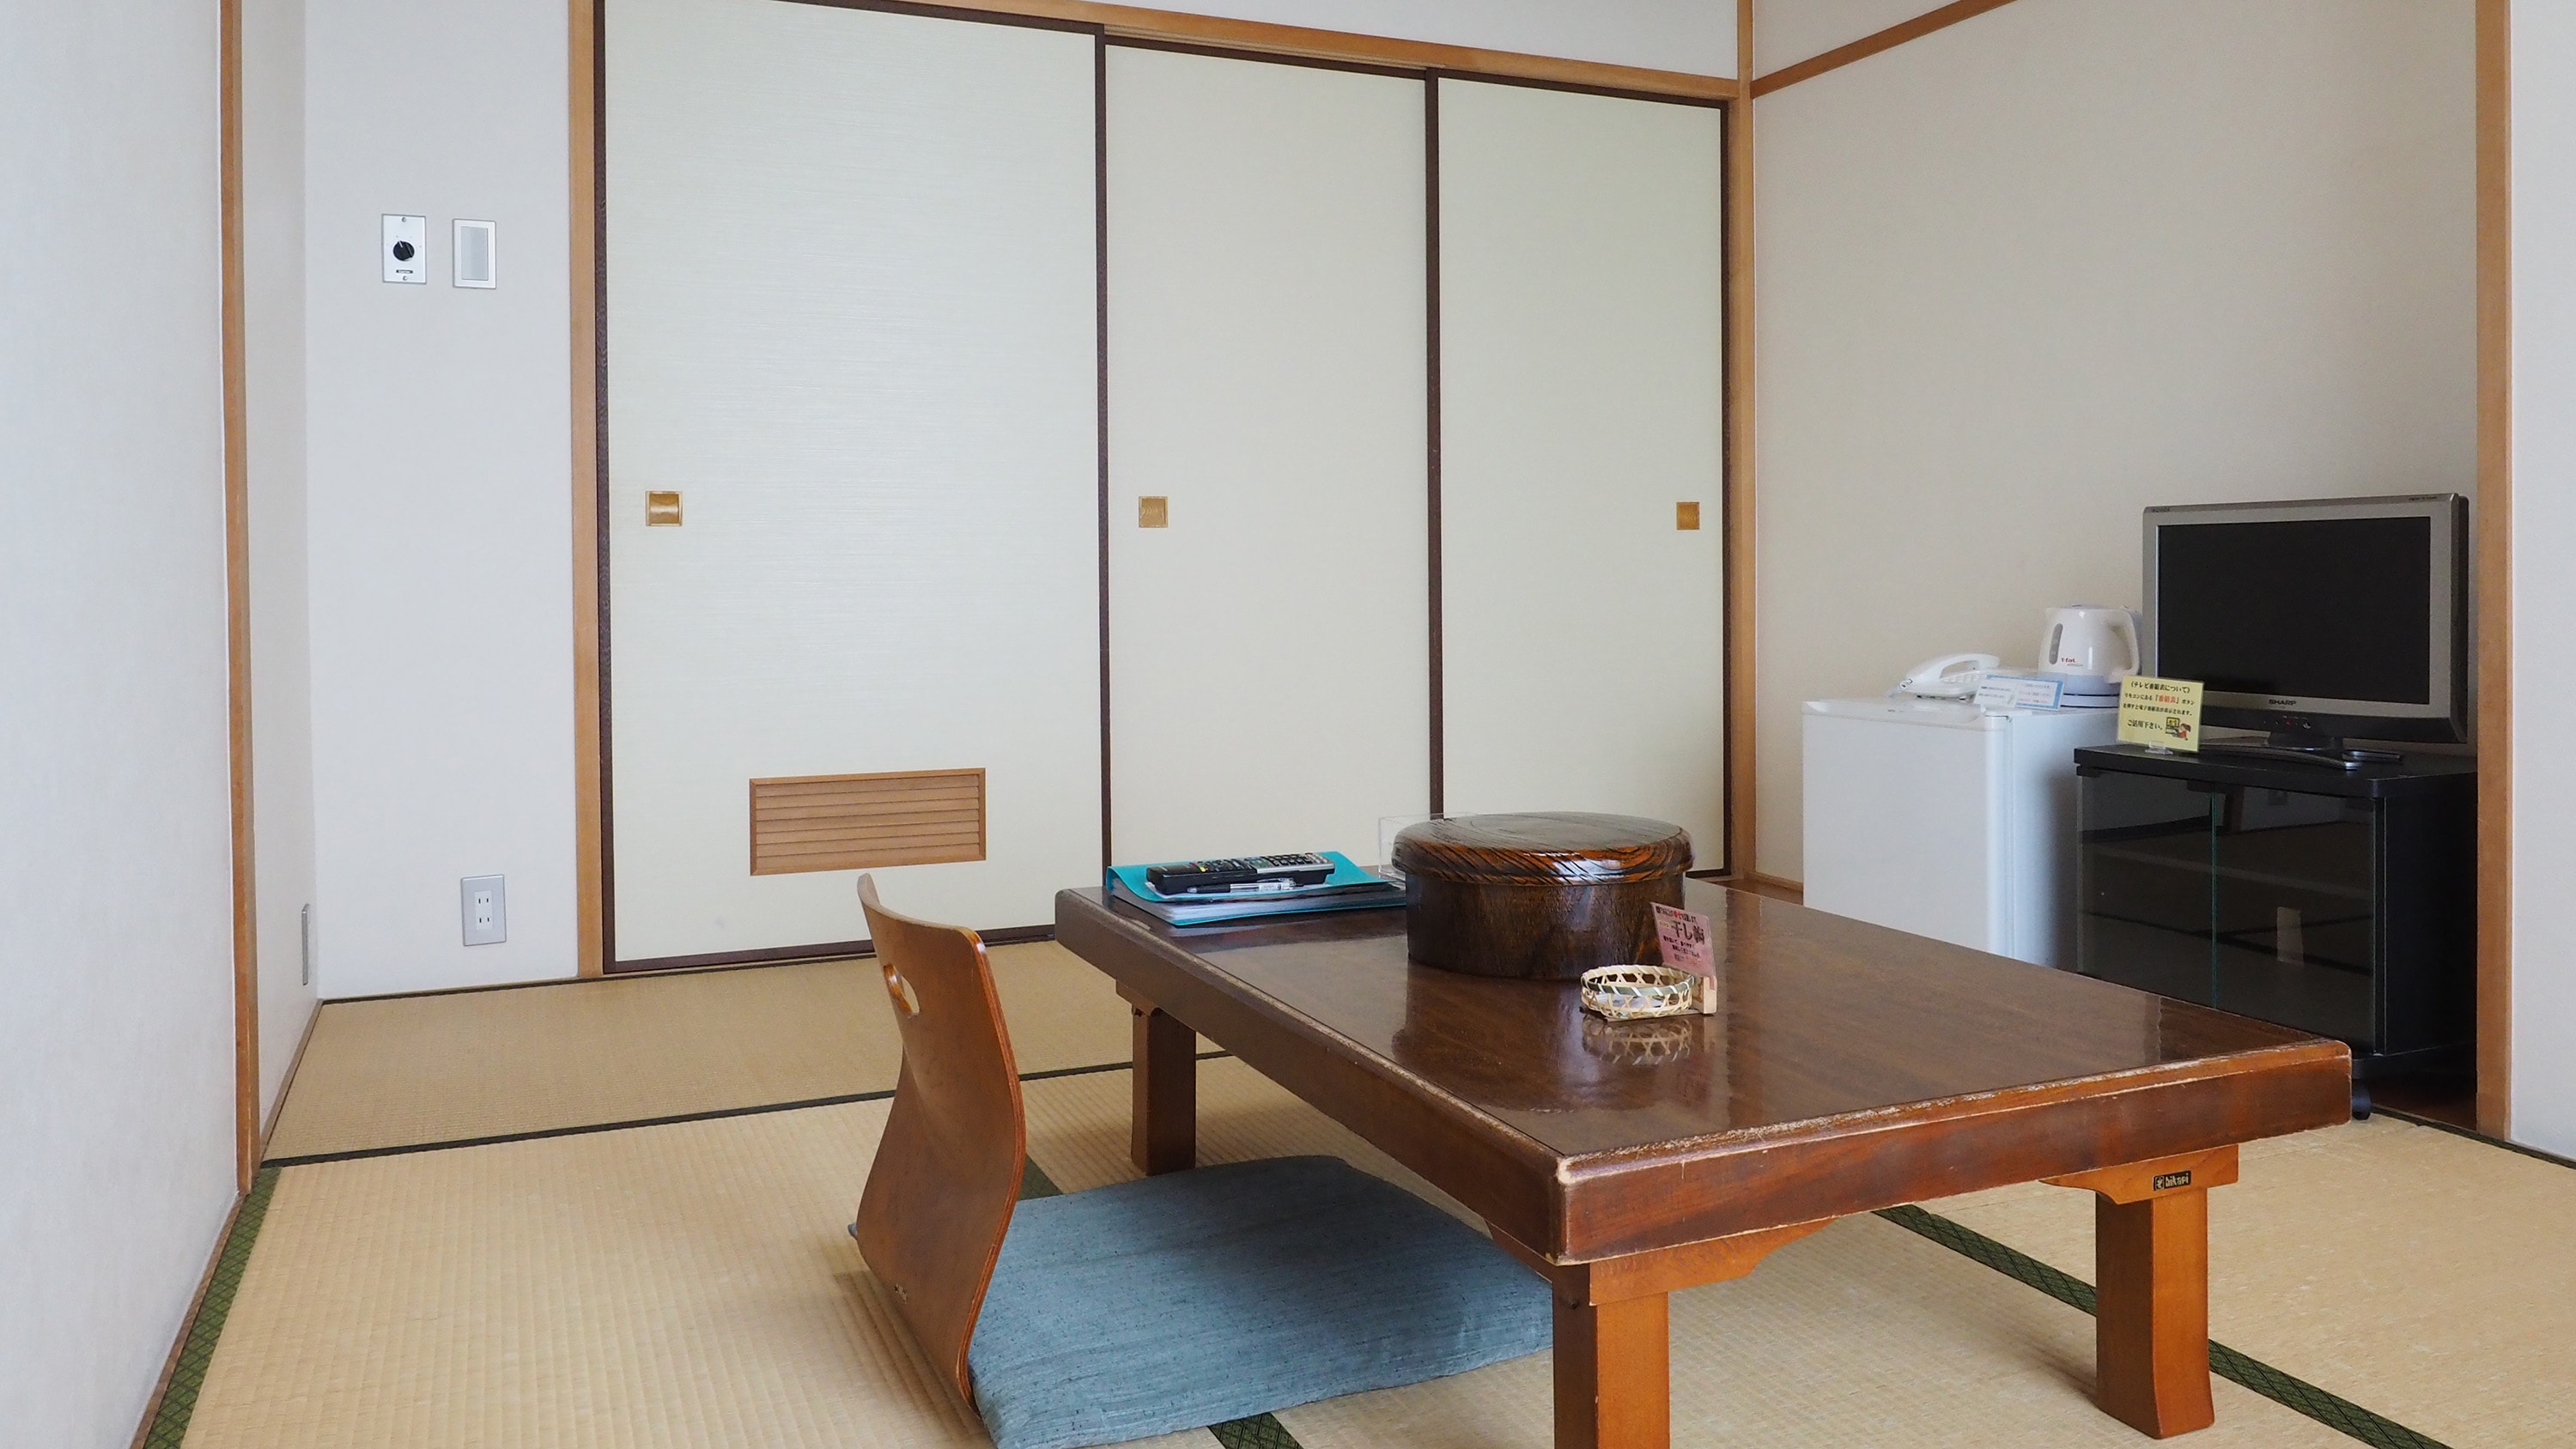 อาคารหลัก ห้องสไตล์ญี่ปุ่น 6 เสื่อทาทามิ (ตัวอย่าง)